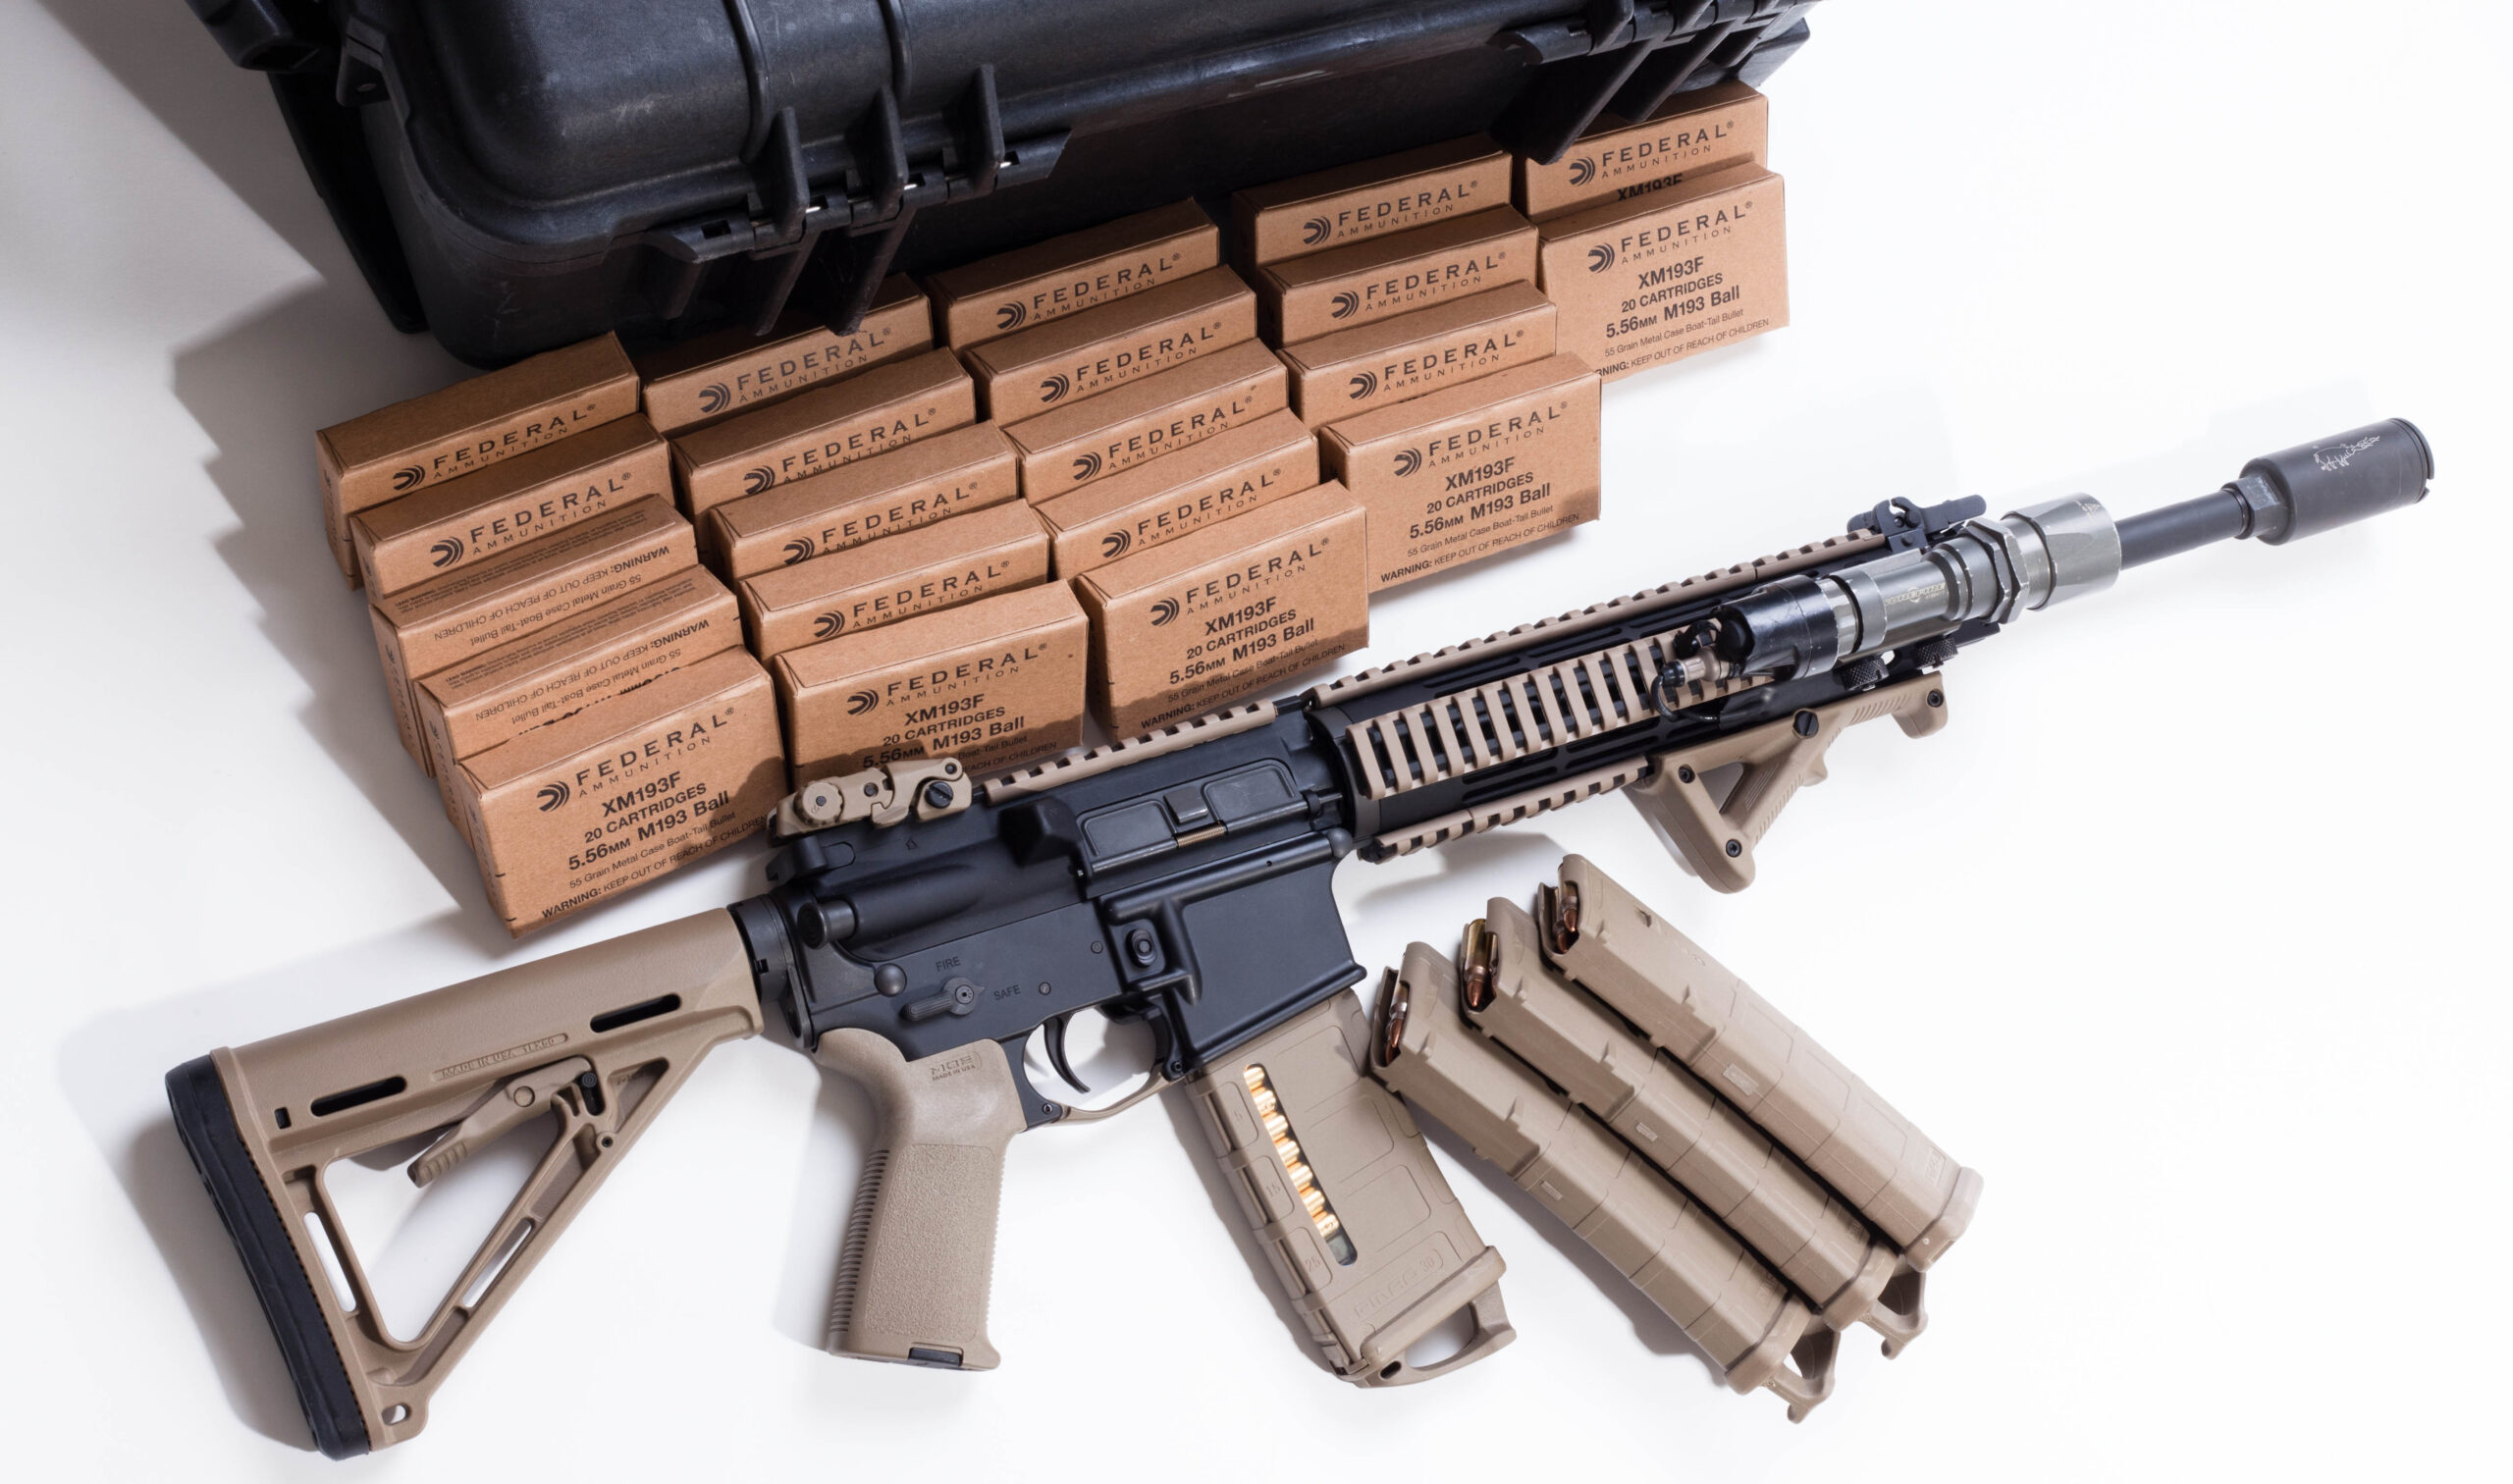 Assault weapon and ammunition